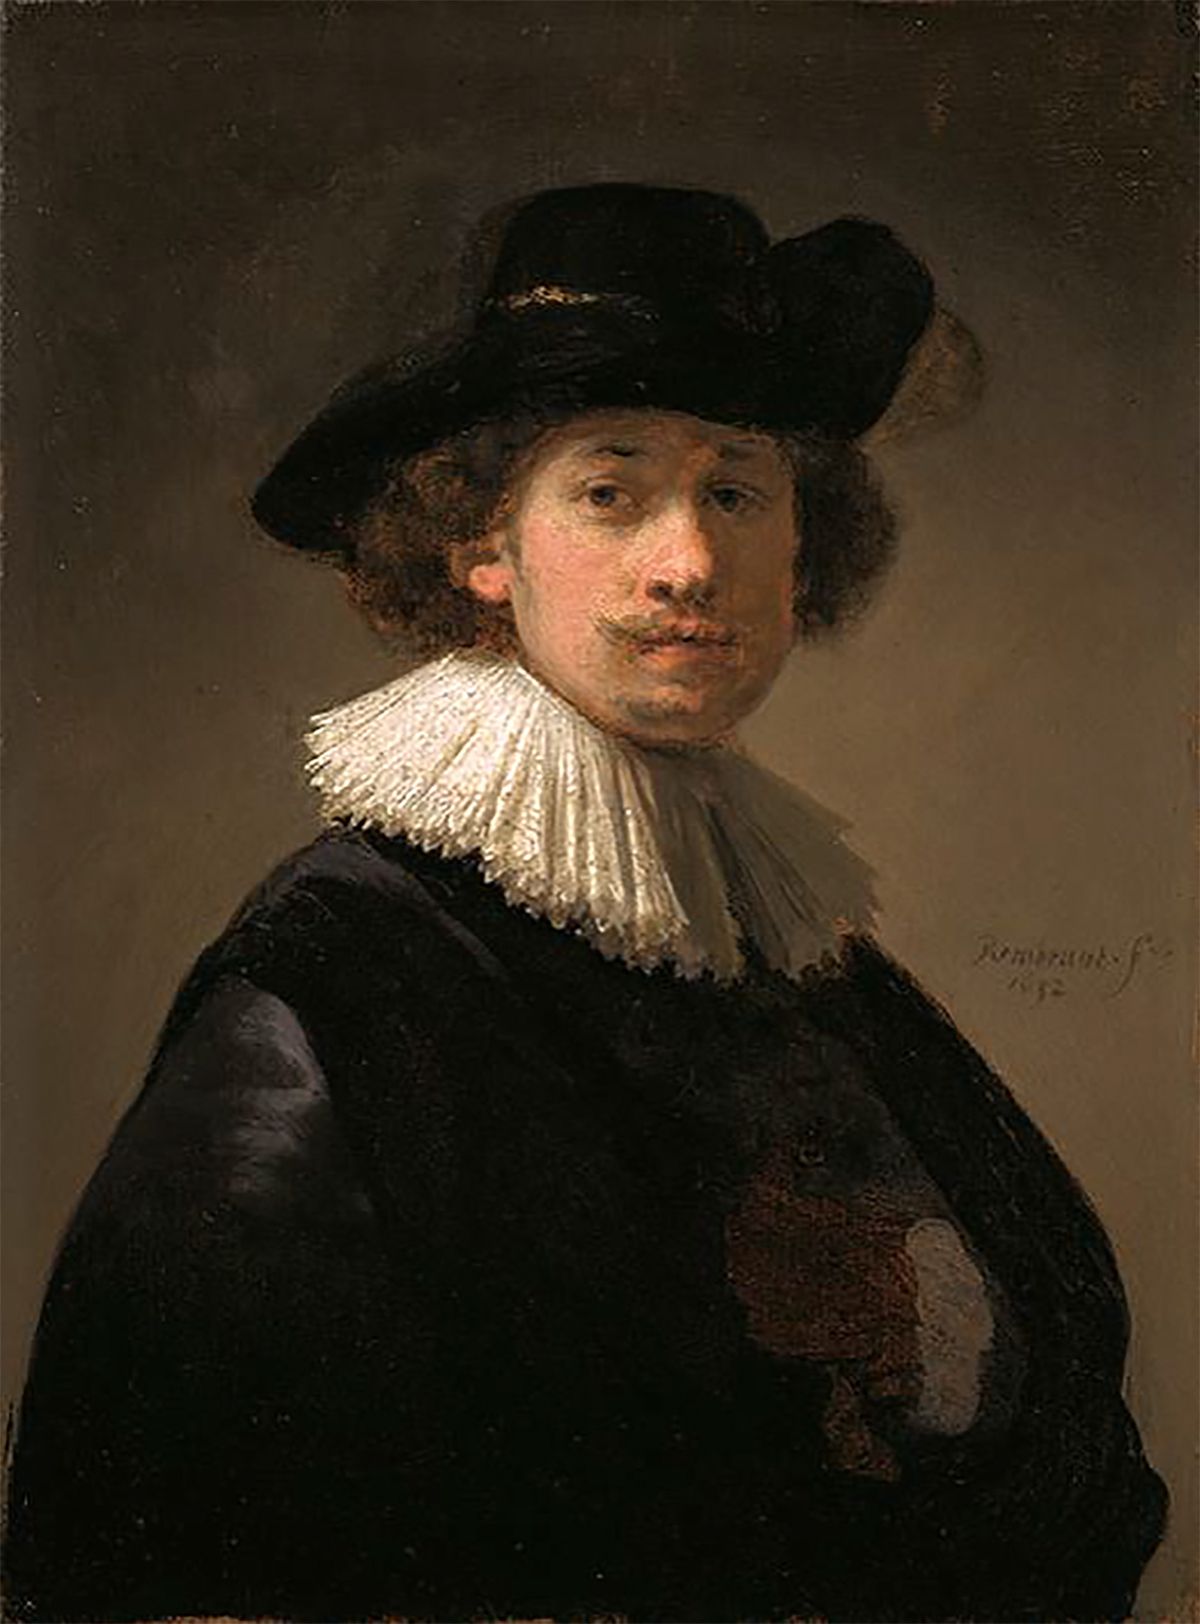 Műkincsrablások, amelyek megrázták a világot, műkincs, rablás, műkincsrablásokavilágban, Rembrandt self-portrait, festmény lopás